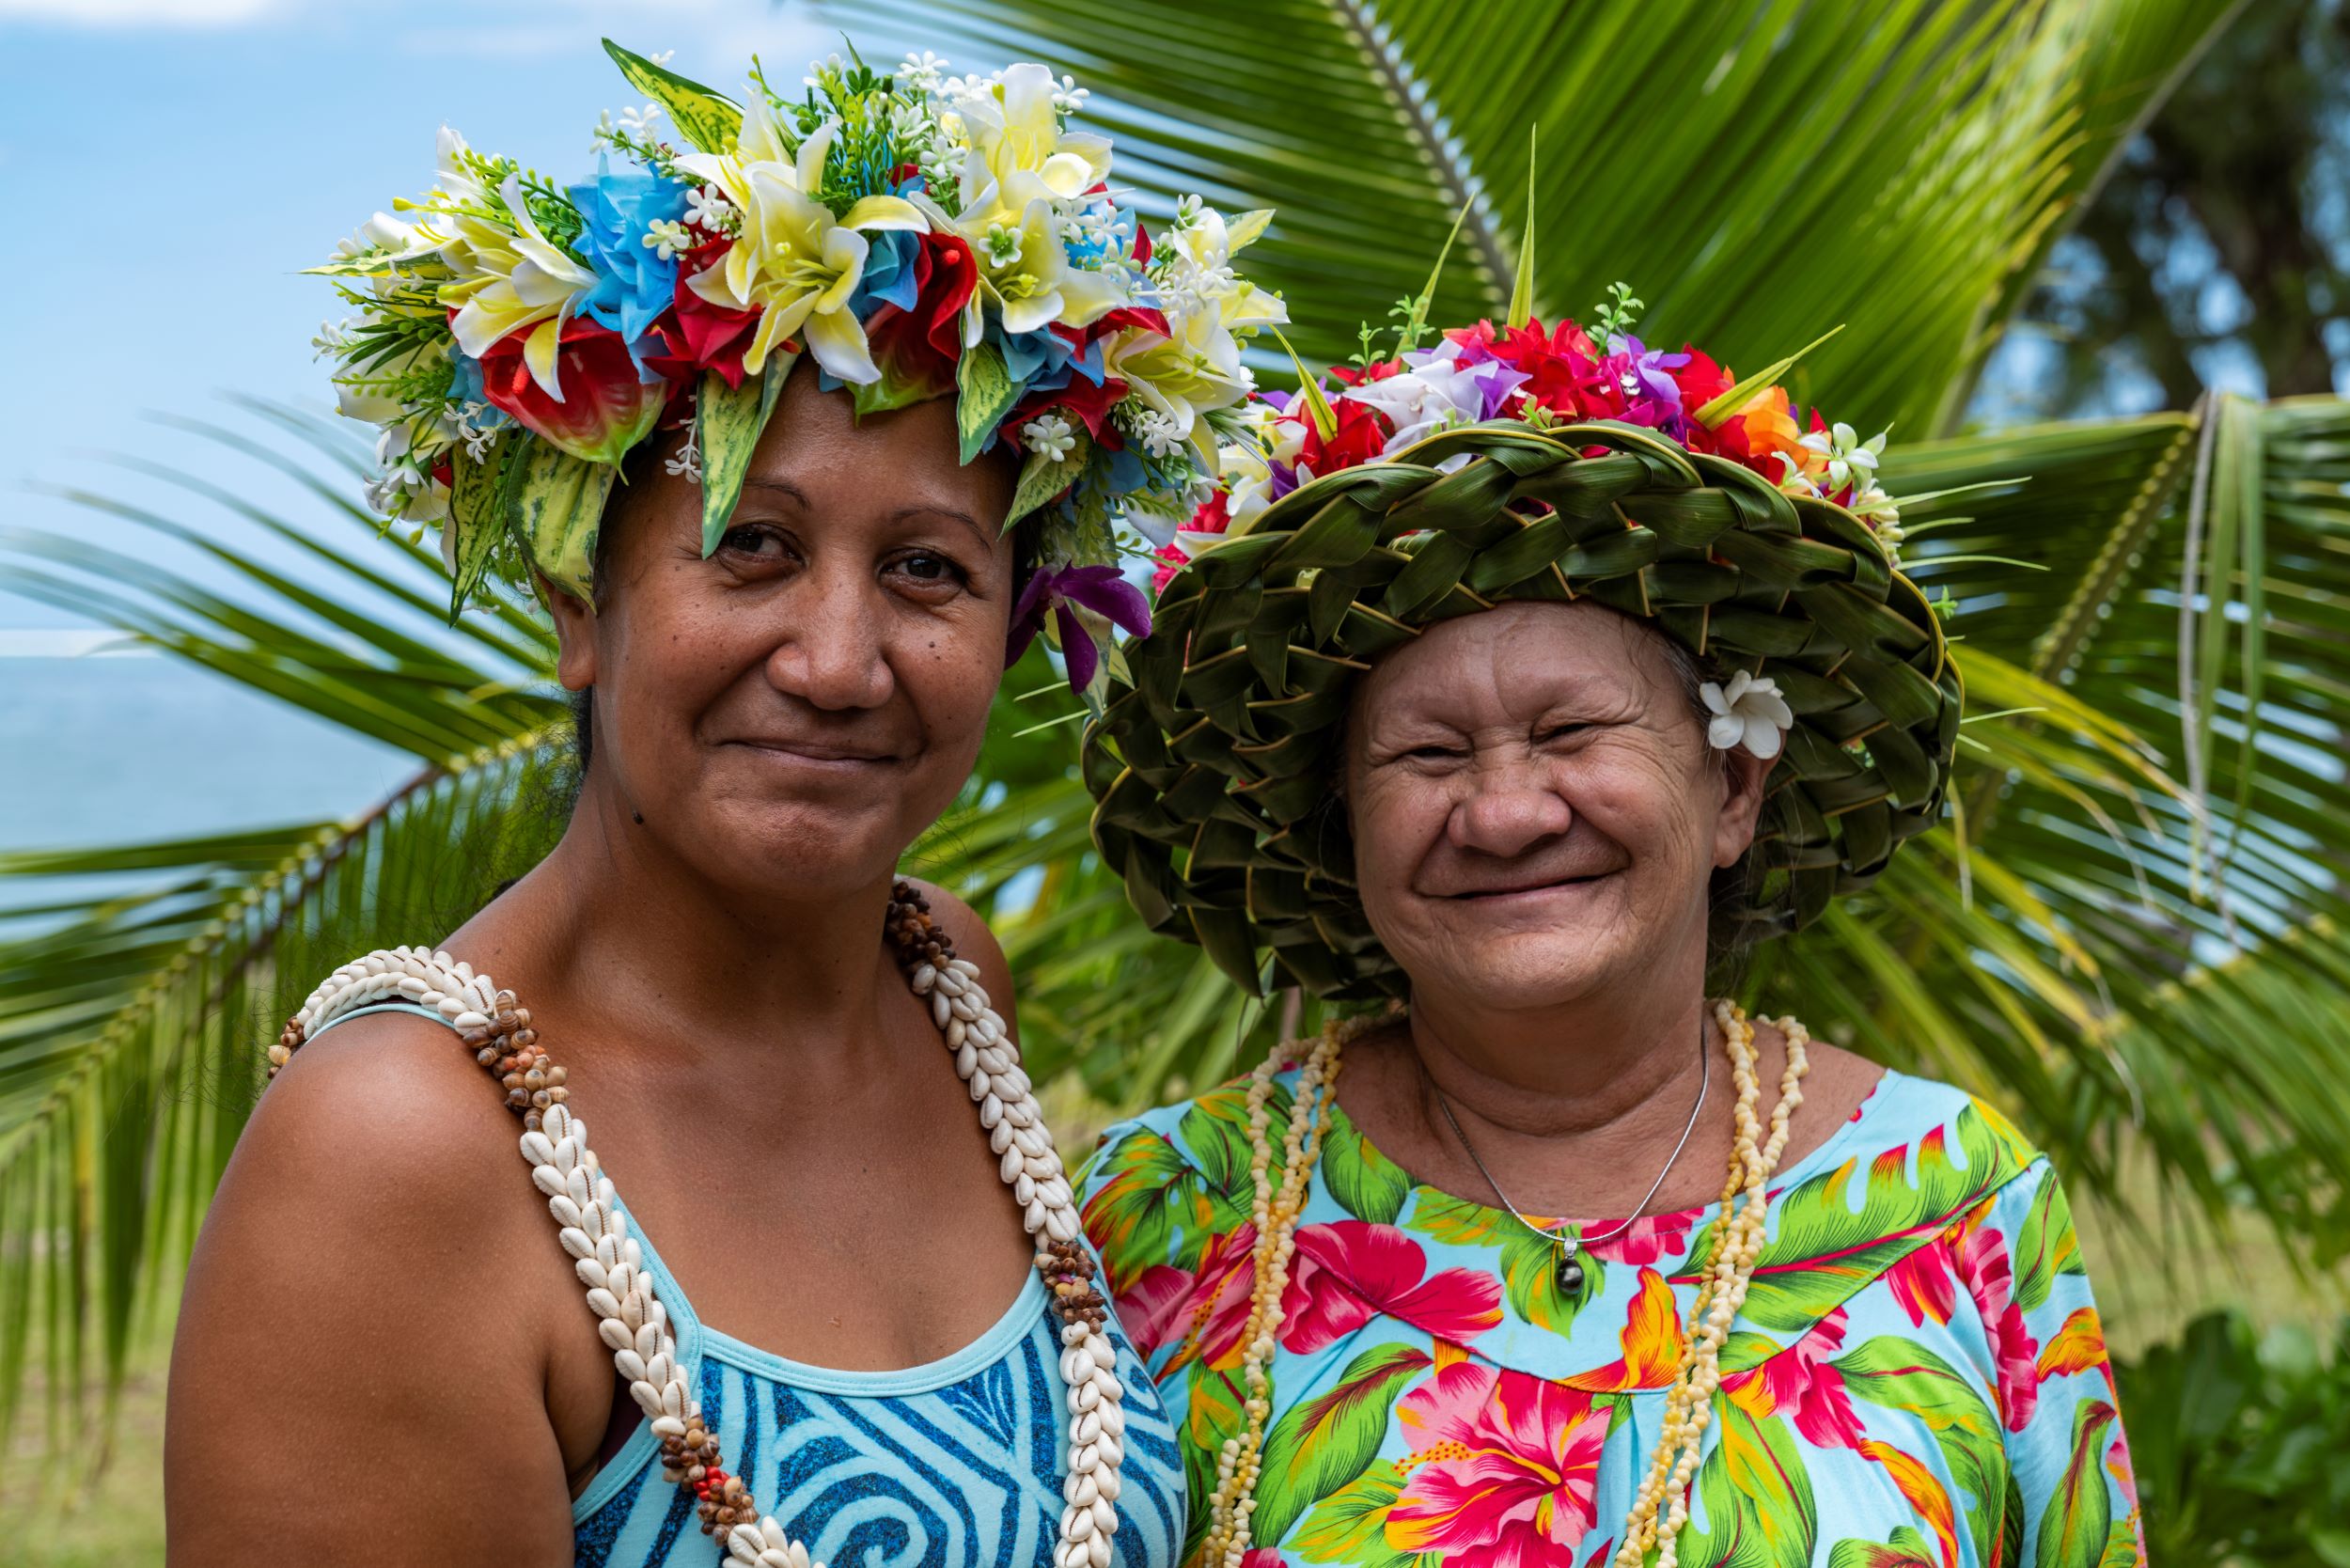 ocal Tahitian ladies - Tahiti Tourisme, Holger Leue